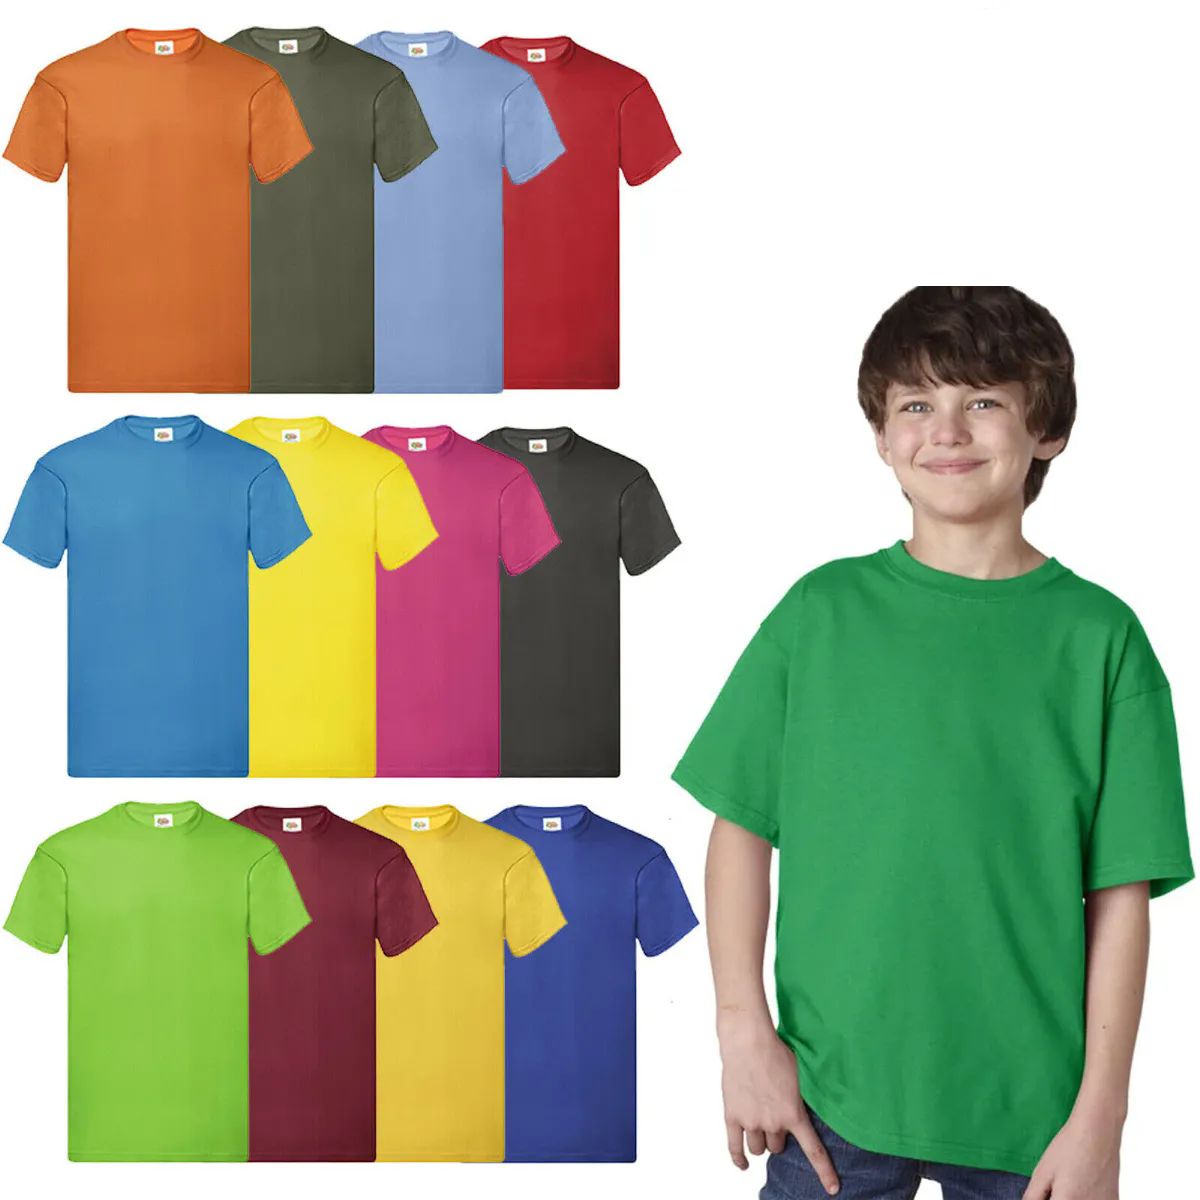 288 Wholesale Billion Hats Kids Youth Cotton Assorted Colors T Shirts Size L